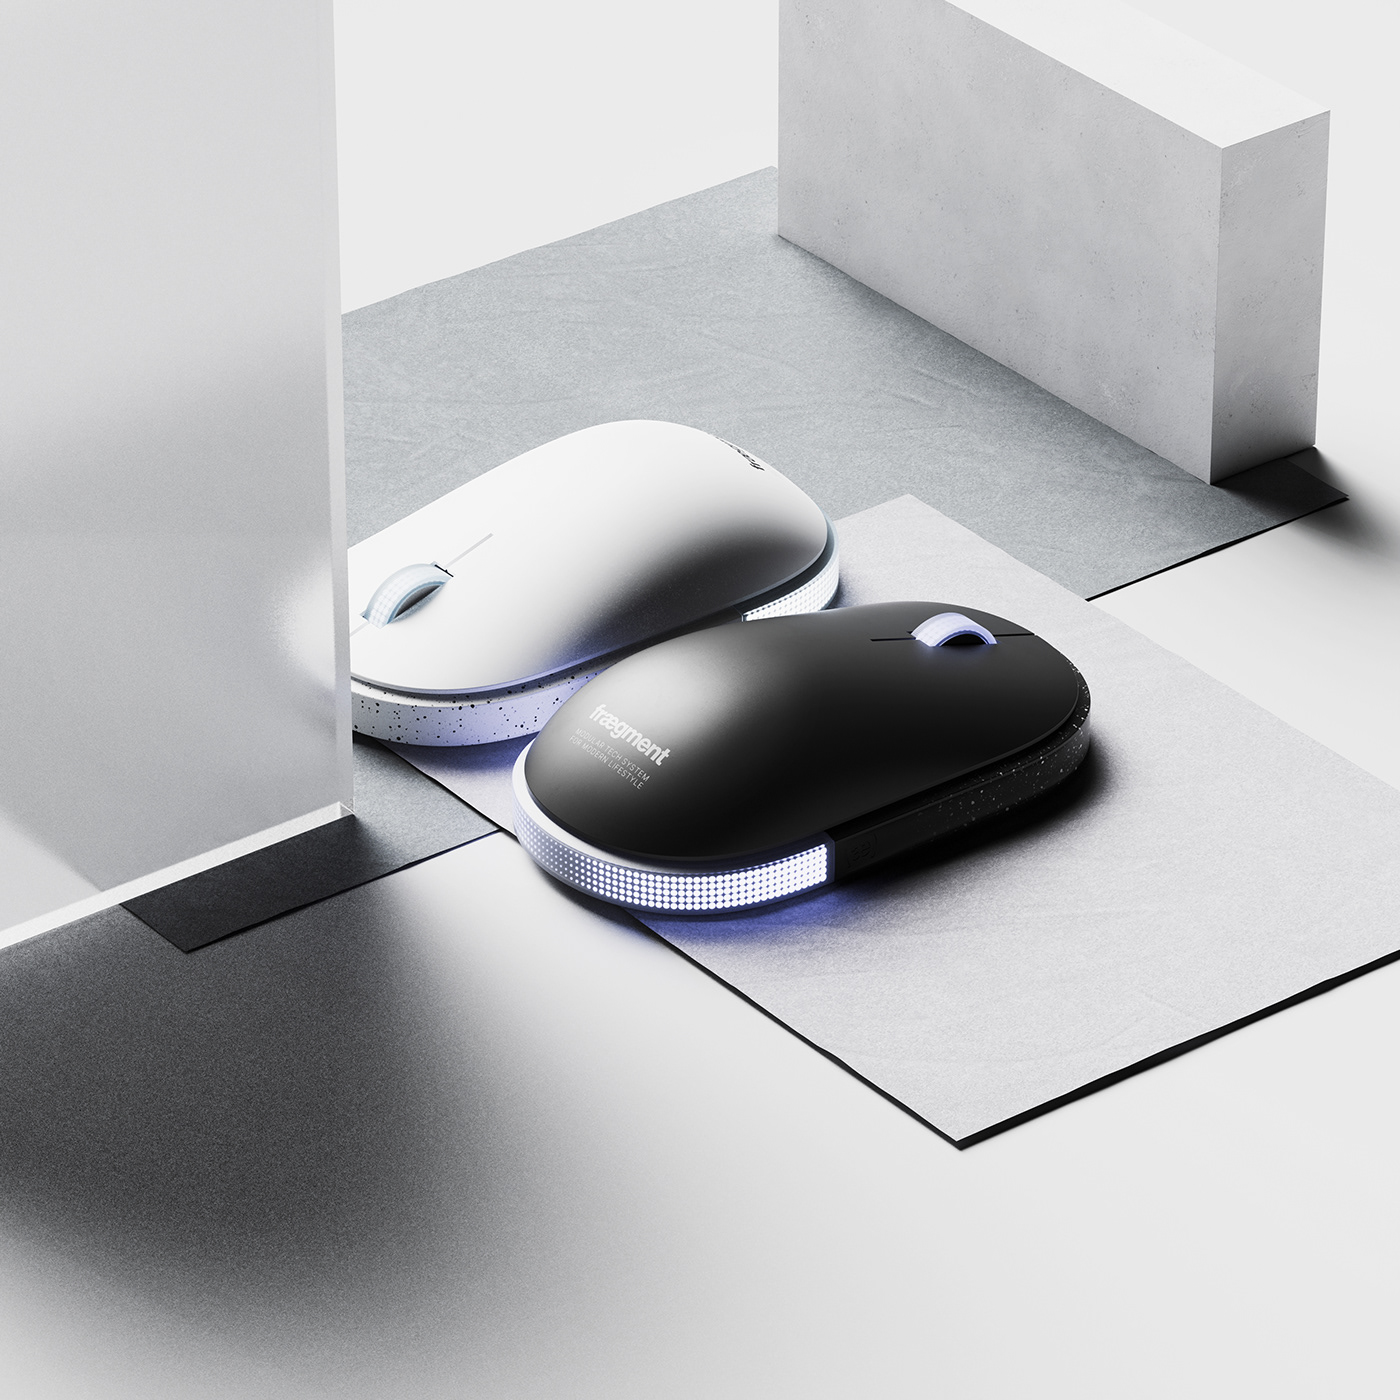 时尚灵巧的Mouse-1鼠标设计